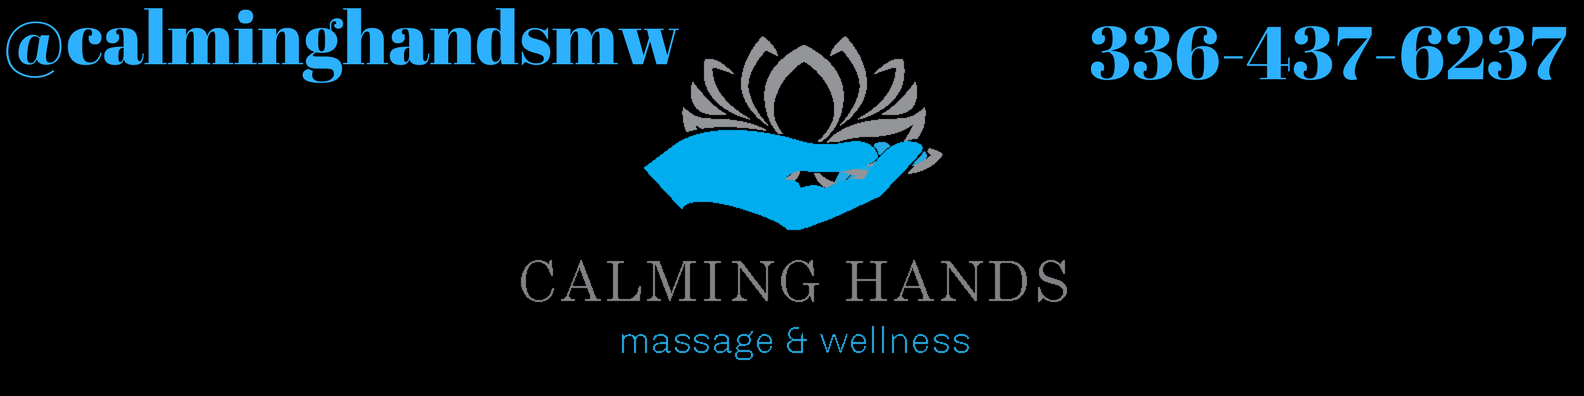 Meet Susan Haley: Owner of Calming Hands Massage and Wellness